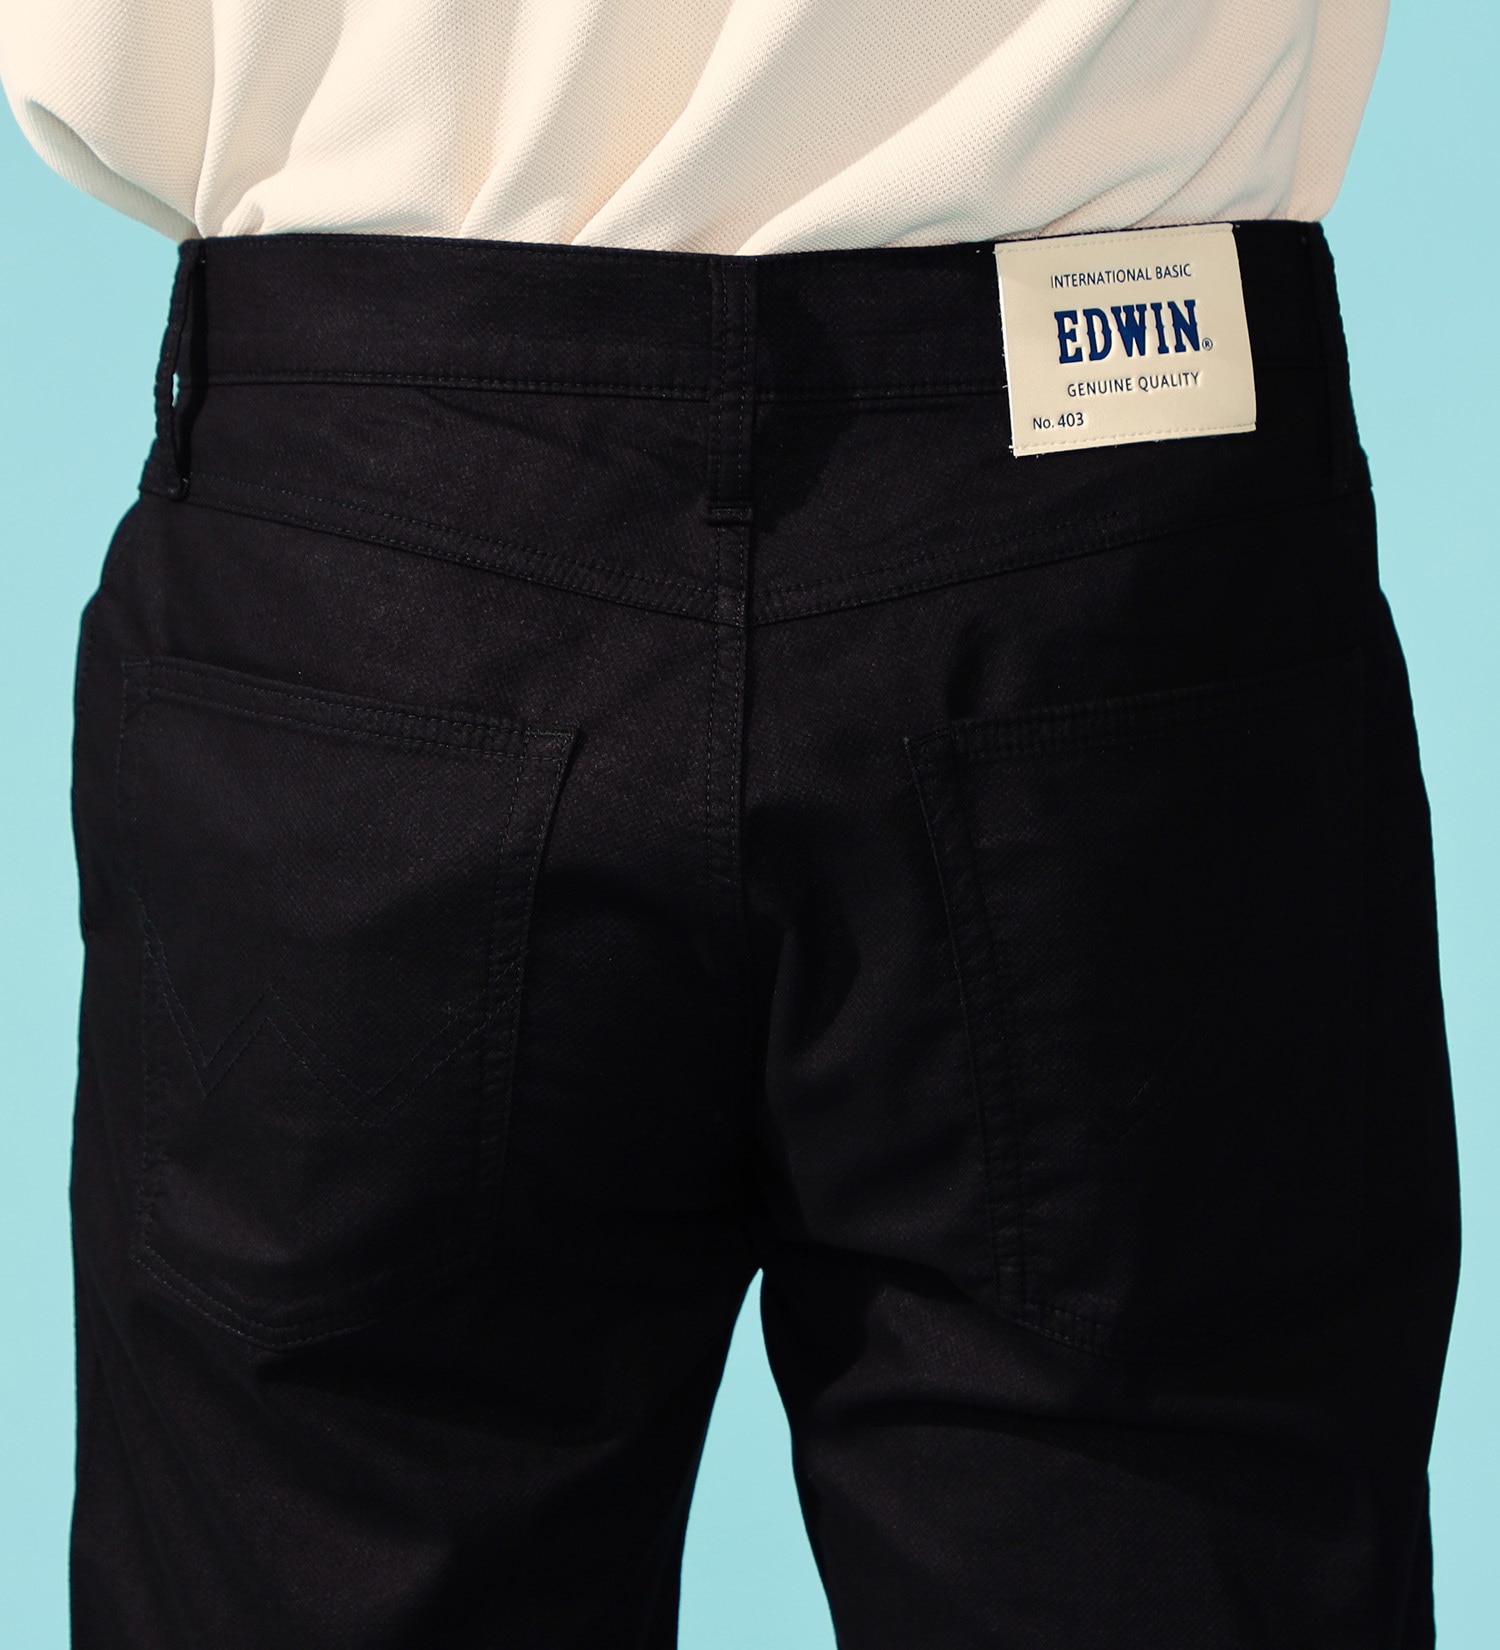 EDWIN(エドウイン)の【涼】インターナショナルベーシック レギュラーストレートパンツ COOLFLEX 裏メッシュ素材 最軽量 スラッシュポケット|パンツ/パンツ/メンズ|ブラック